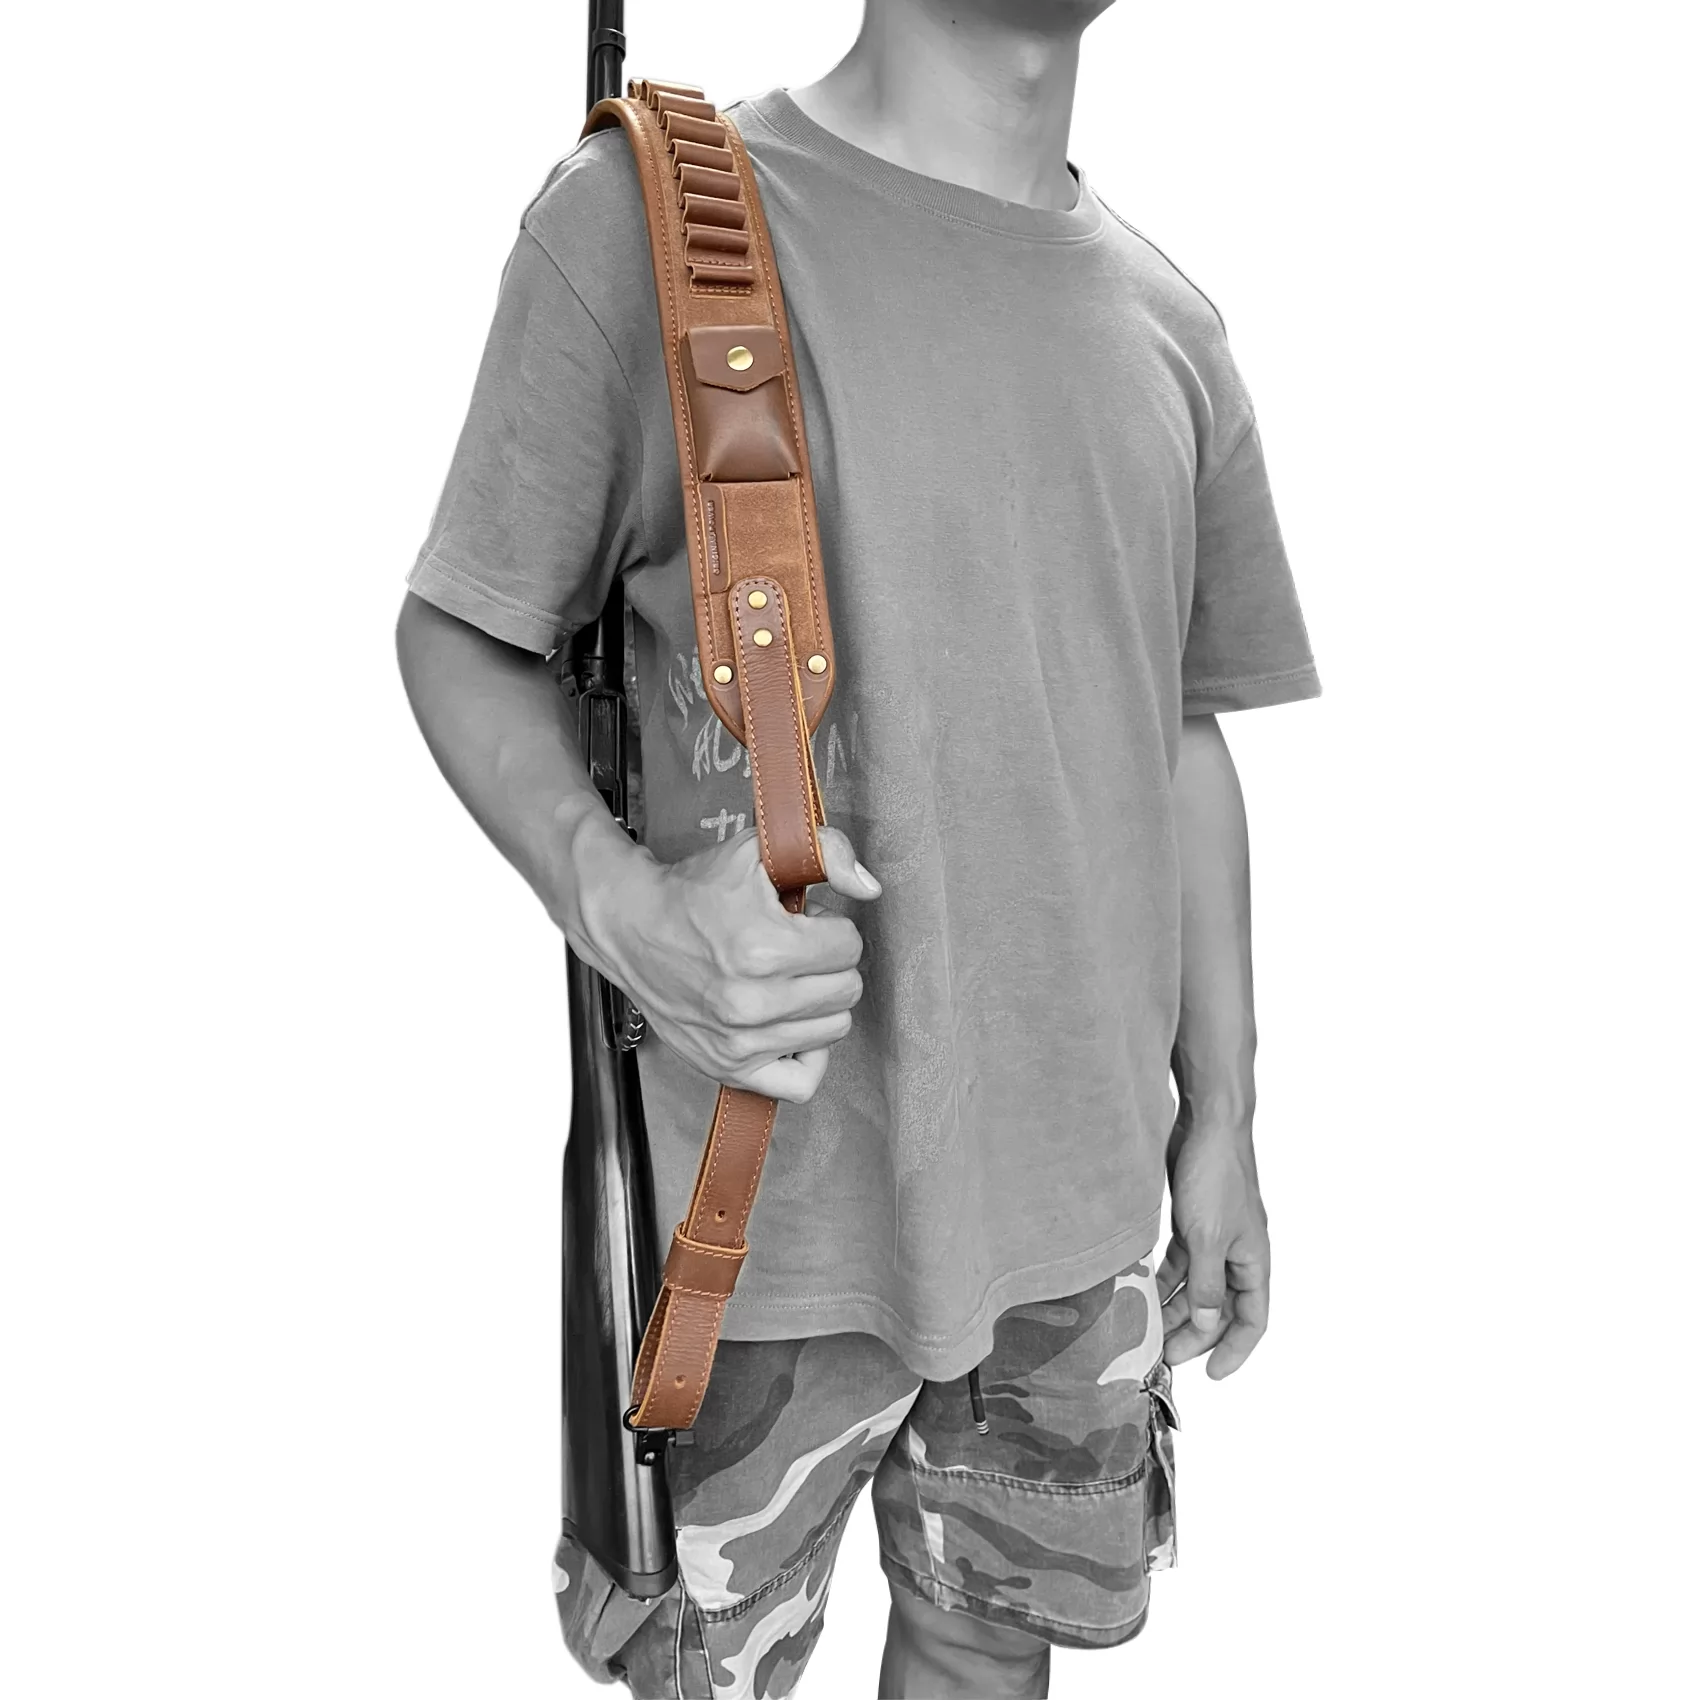 OP ORIGINAL POWER Leather Rifle Sling with Cartridge Holder,Shotgun Sling,Gun Strap